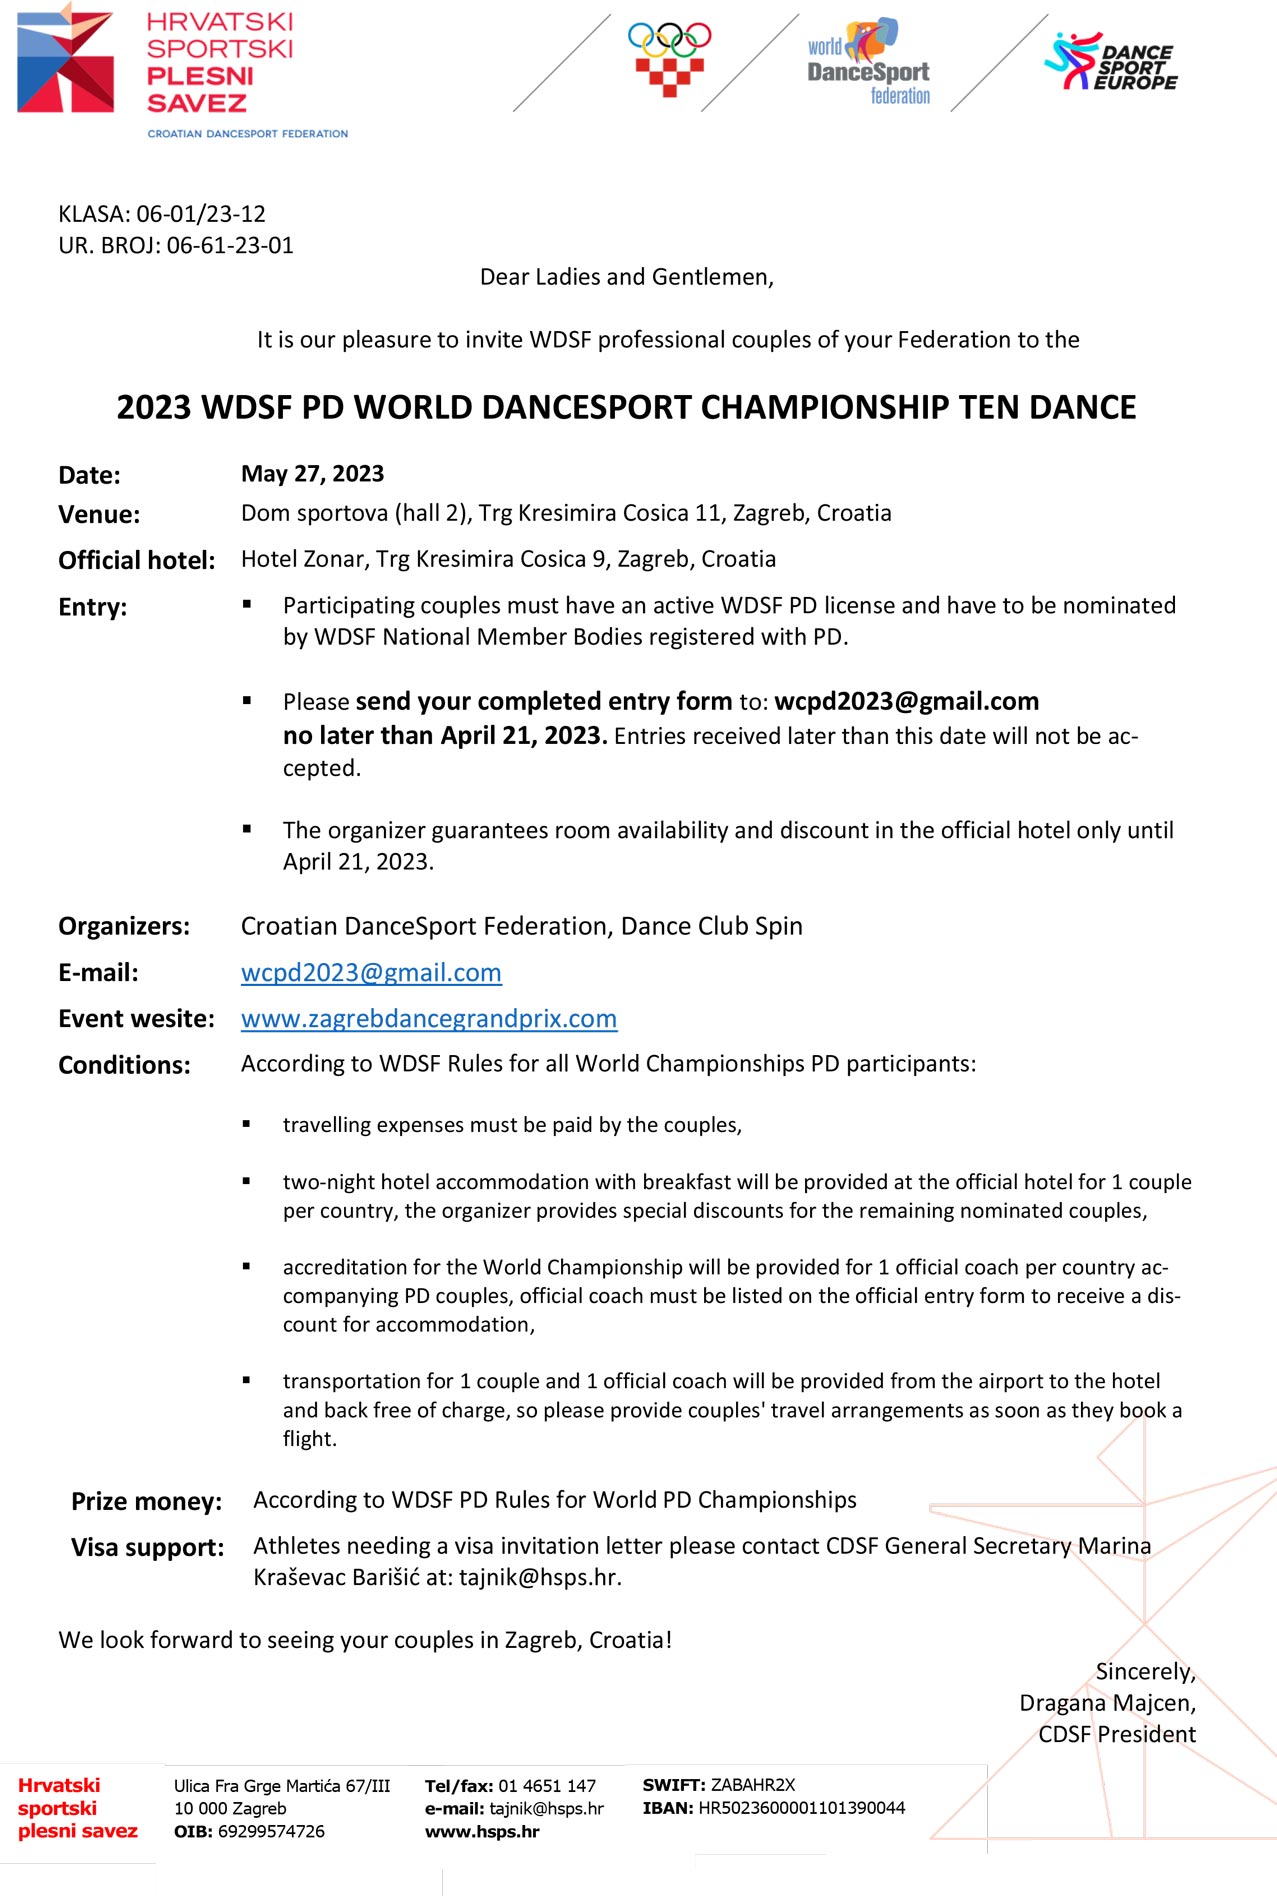 WDSF 2023 World Championship PD Ten Dance Invite